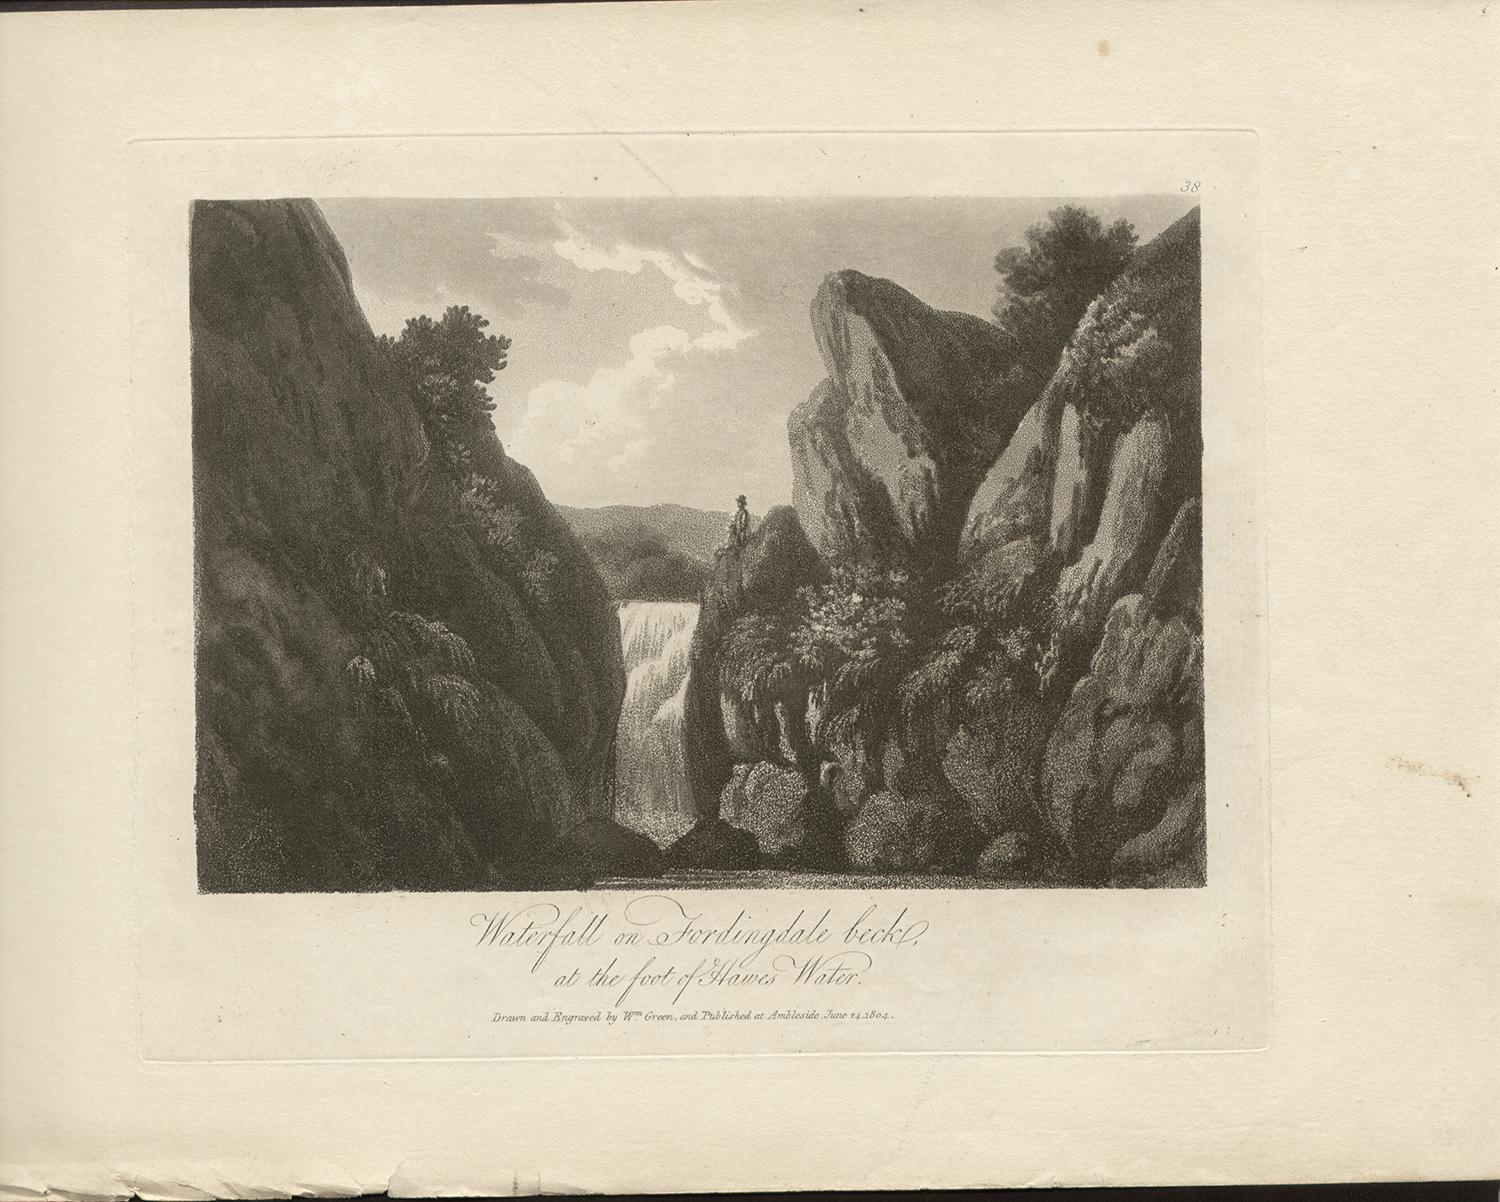 Wasserfall auf Fordingdalebeck, Landschaft des Lake District, 19. Jahrhundert, Englische Aquatinta – Print von William Green